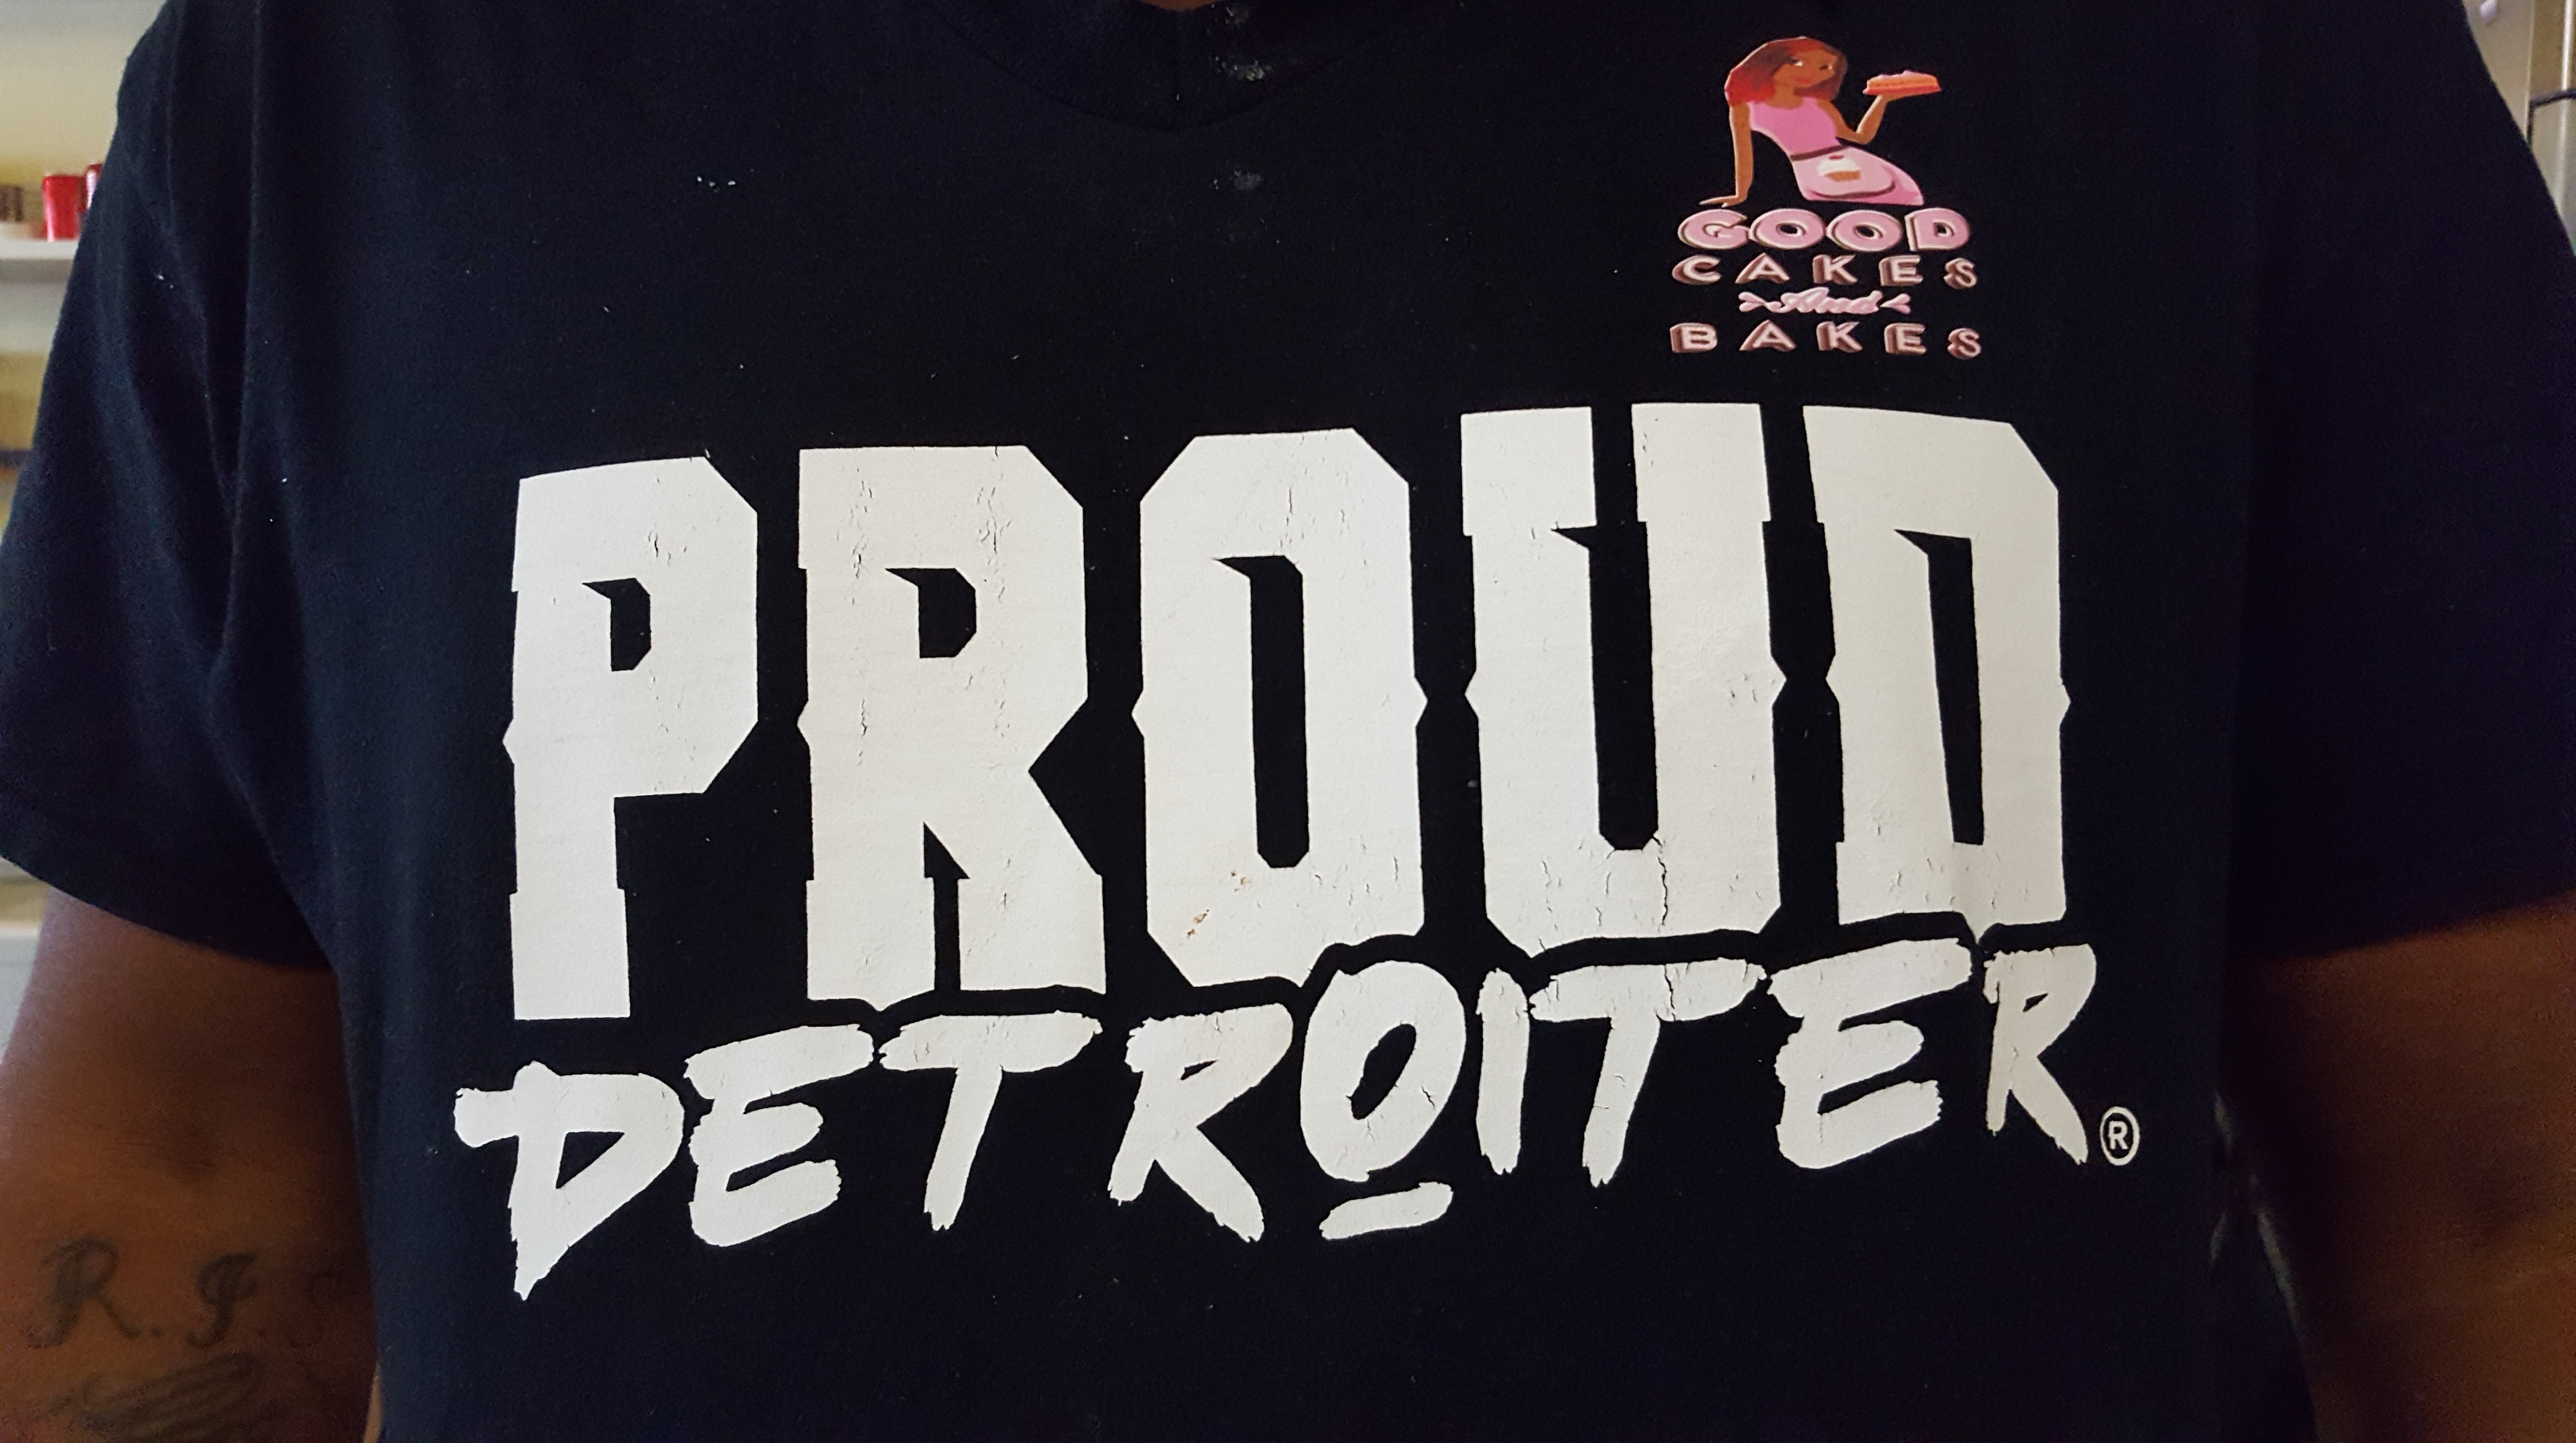 Proud Detroiter